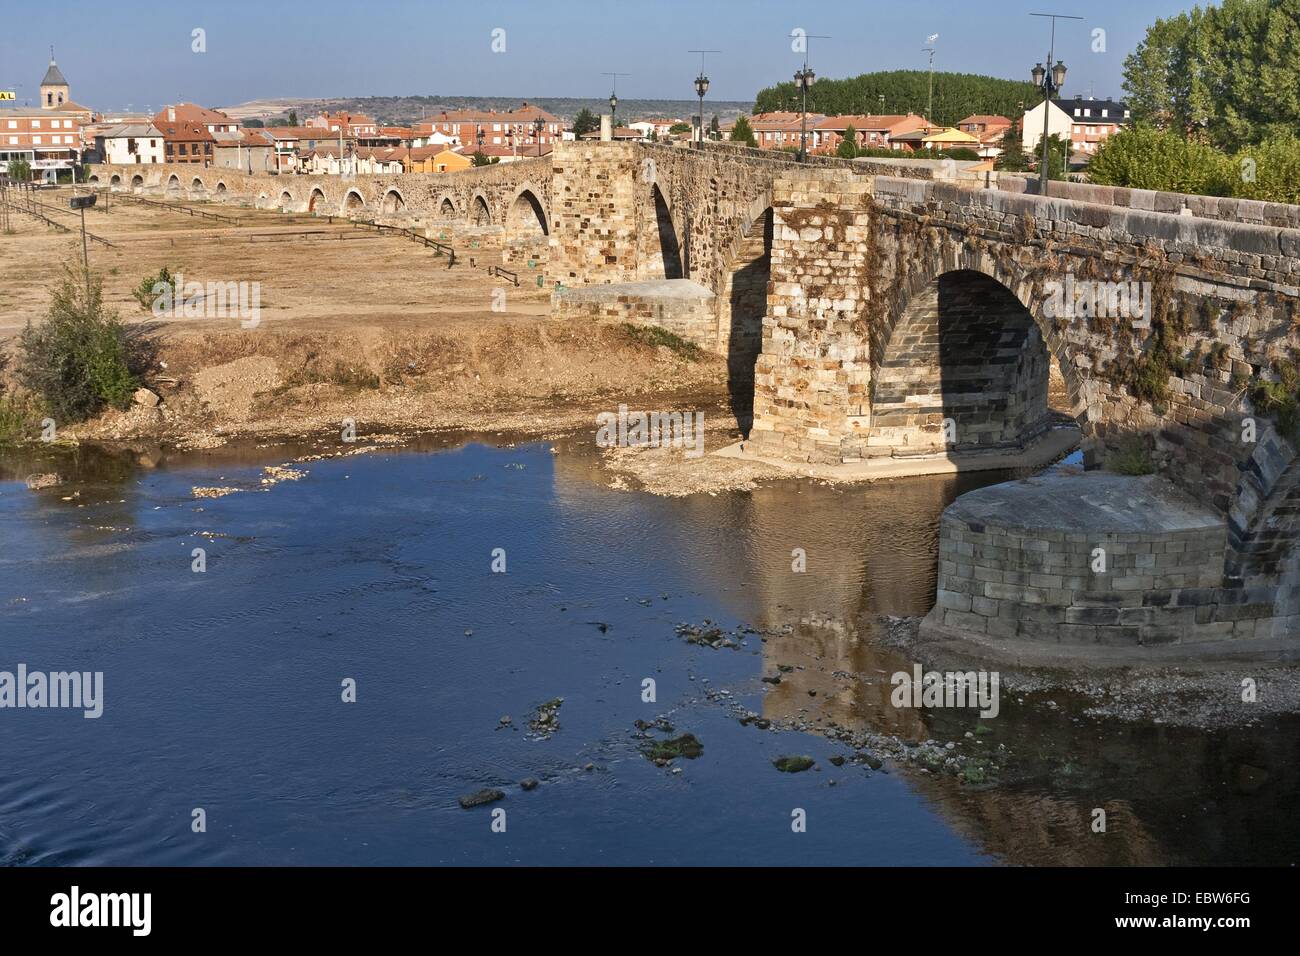 Ponte medievale 'Puente de Ërbigo' al sole del mattino (con i suoi 20 archi il più lungo ponte sul Camino FrancÚs), Spagna, Kastilien und Le¾n, Hospital de Ërbigo Foto Stock